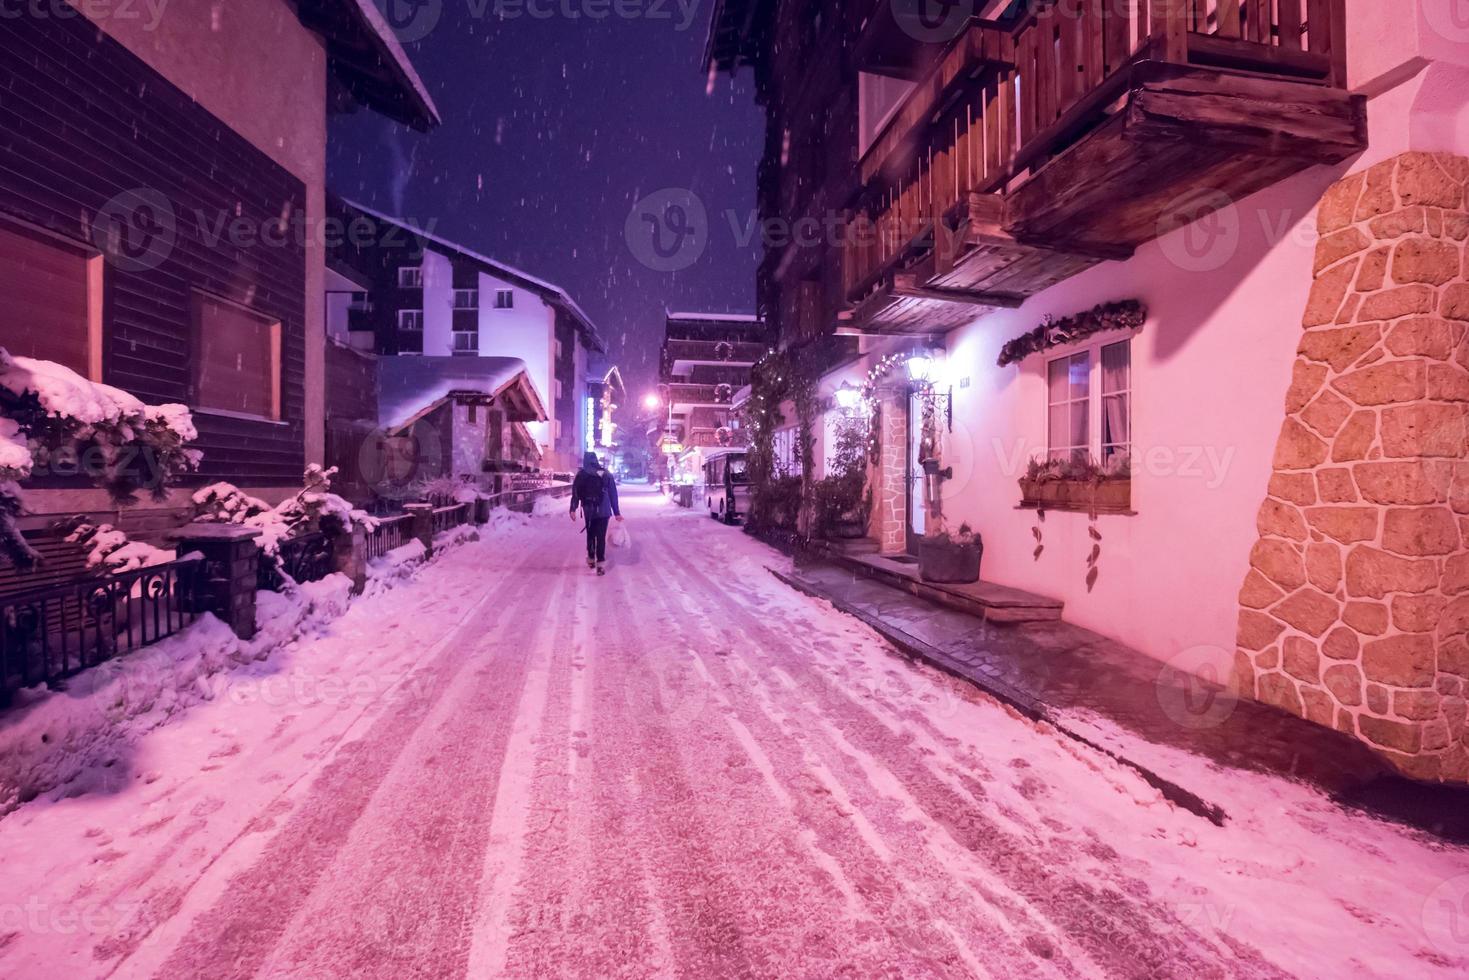 rues enneigées du village de montagne alpin photo